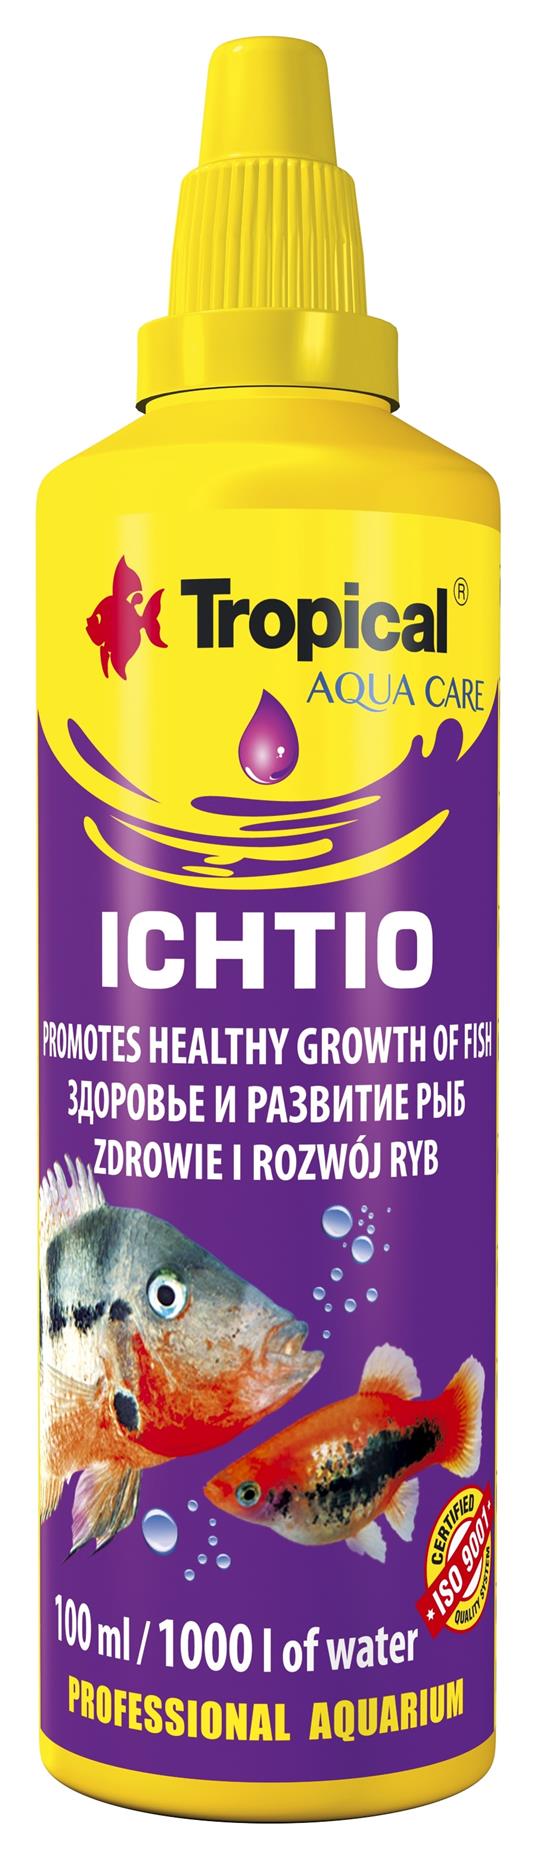 ICHTIO preparat protiv bolesti belih tackica kod riba 100 ml